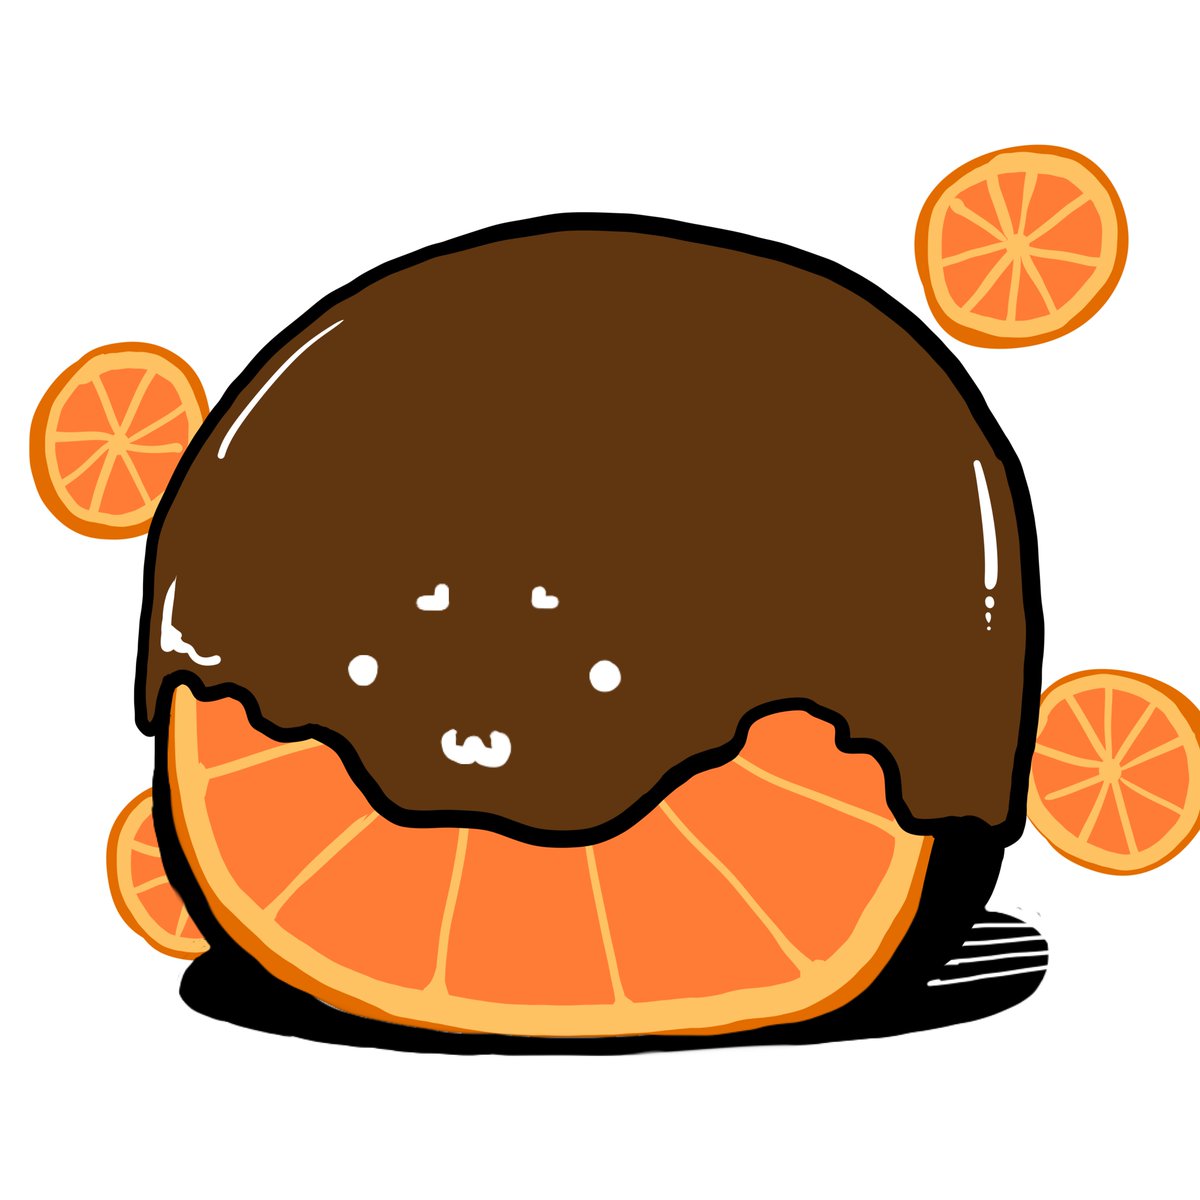 no humans food food focus orange (fruit) white background orange slice orange theme  illustration images